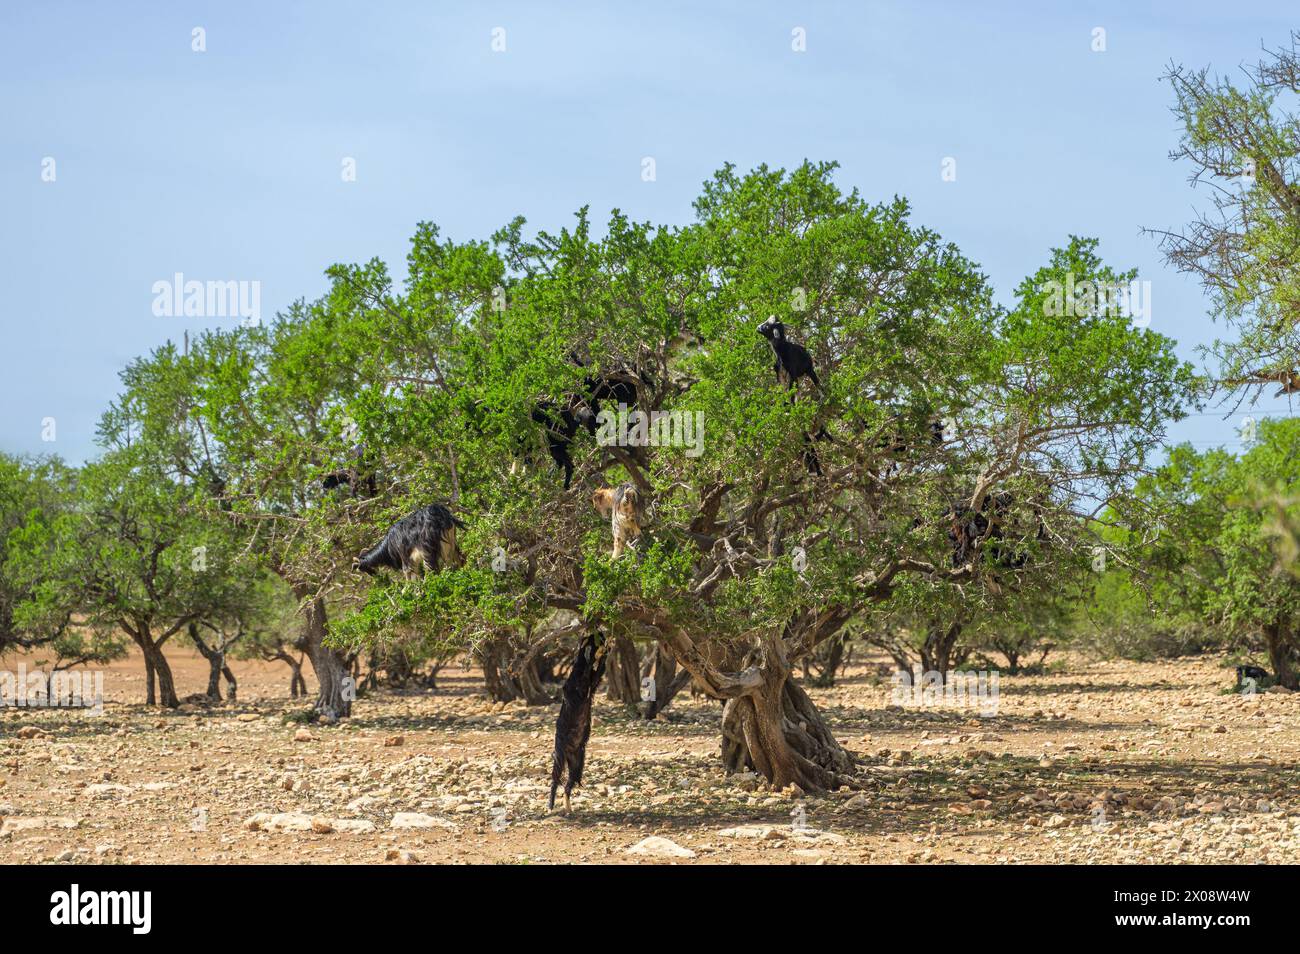 Capre marocchine arroccate in lussureggianti alberi di argan contro un cielo azzurro, che mostrano le pratiche agricole uniche nella campagna del Marocco Foto Stock